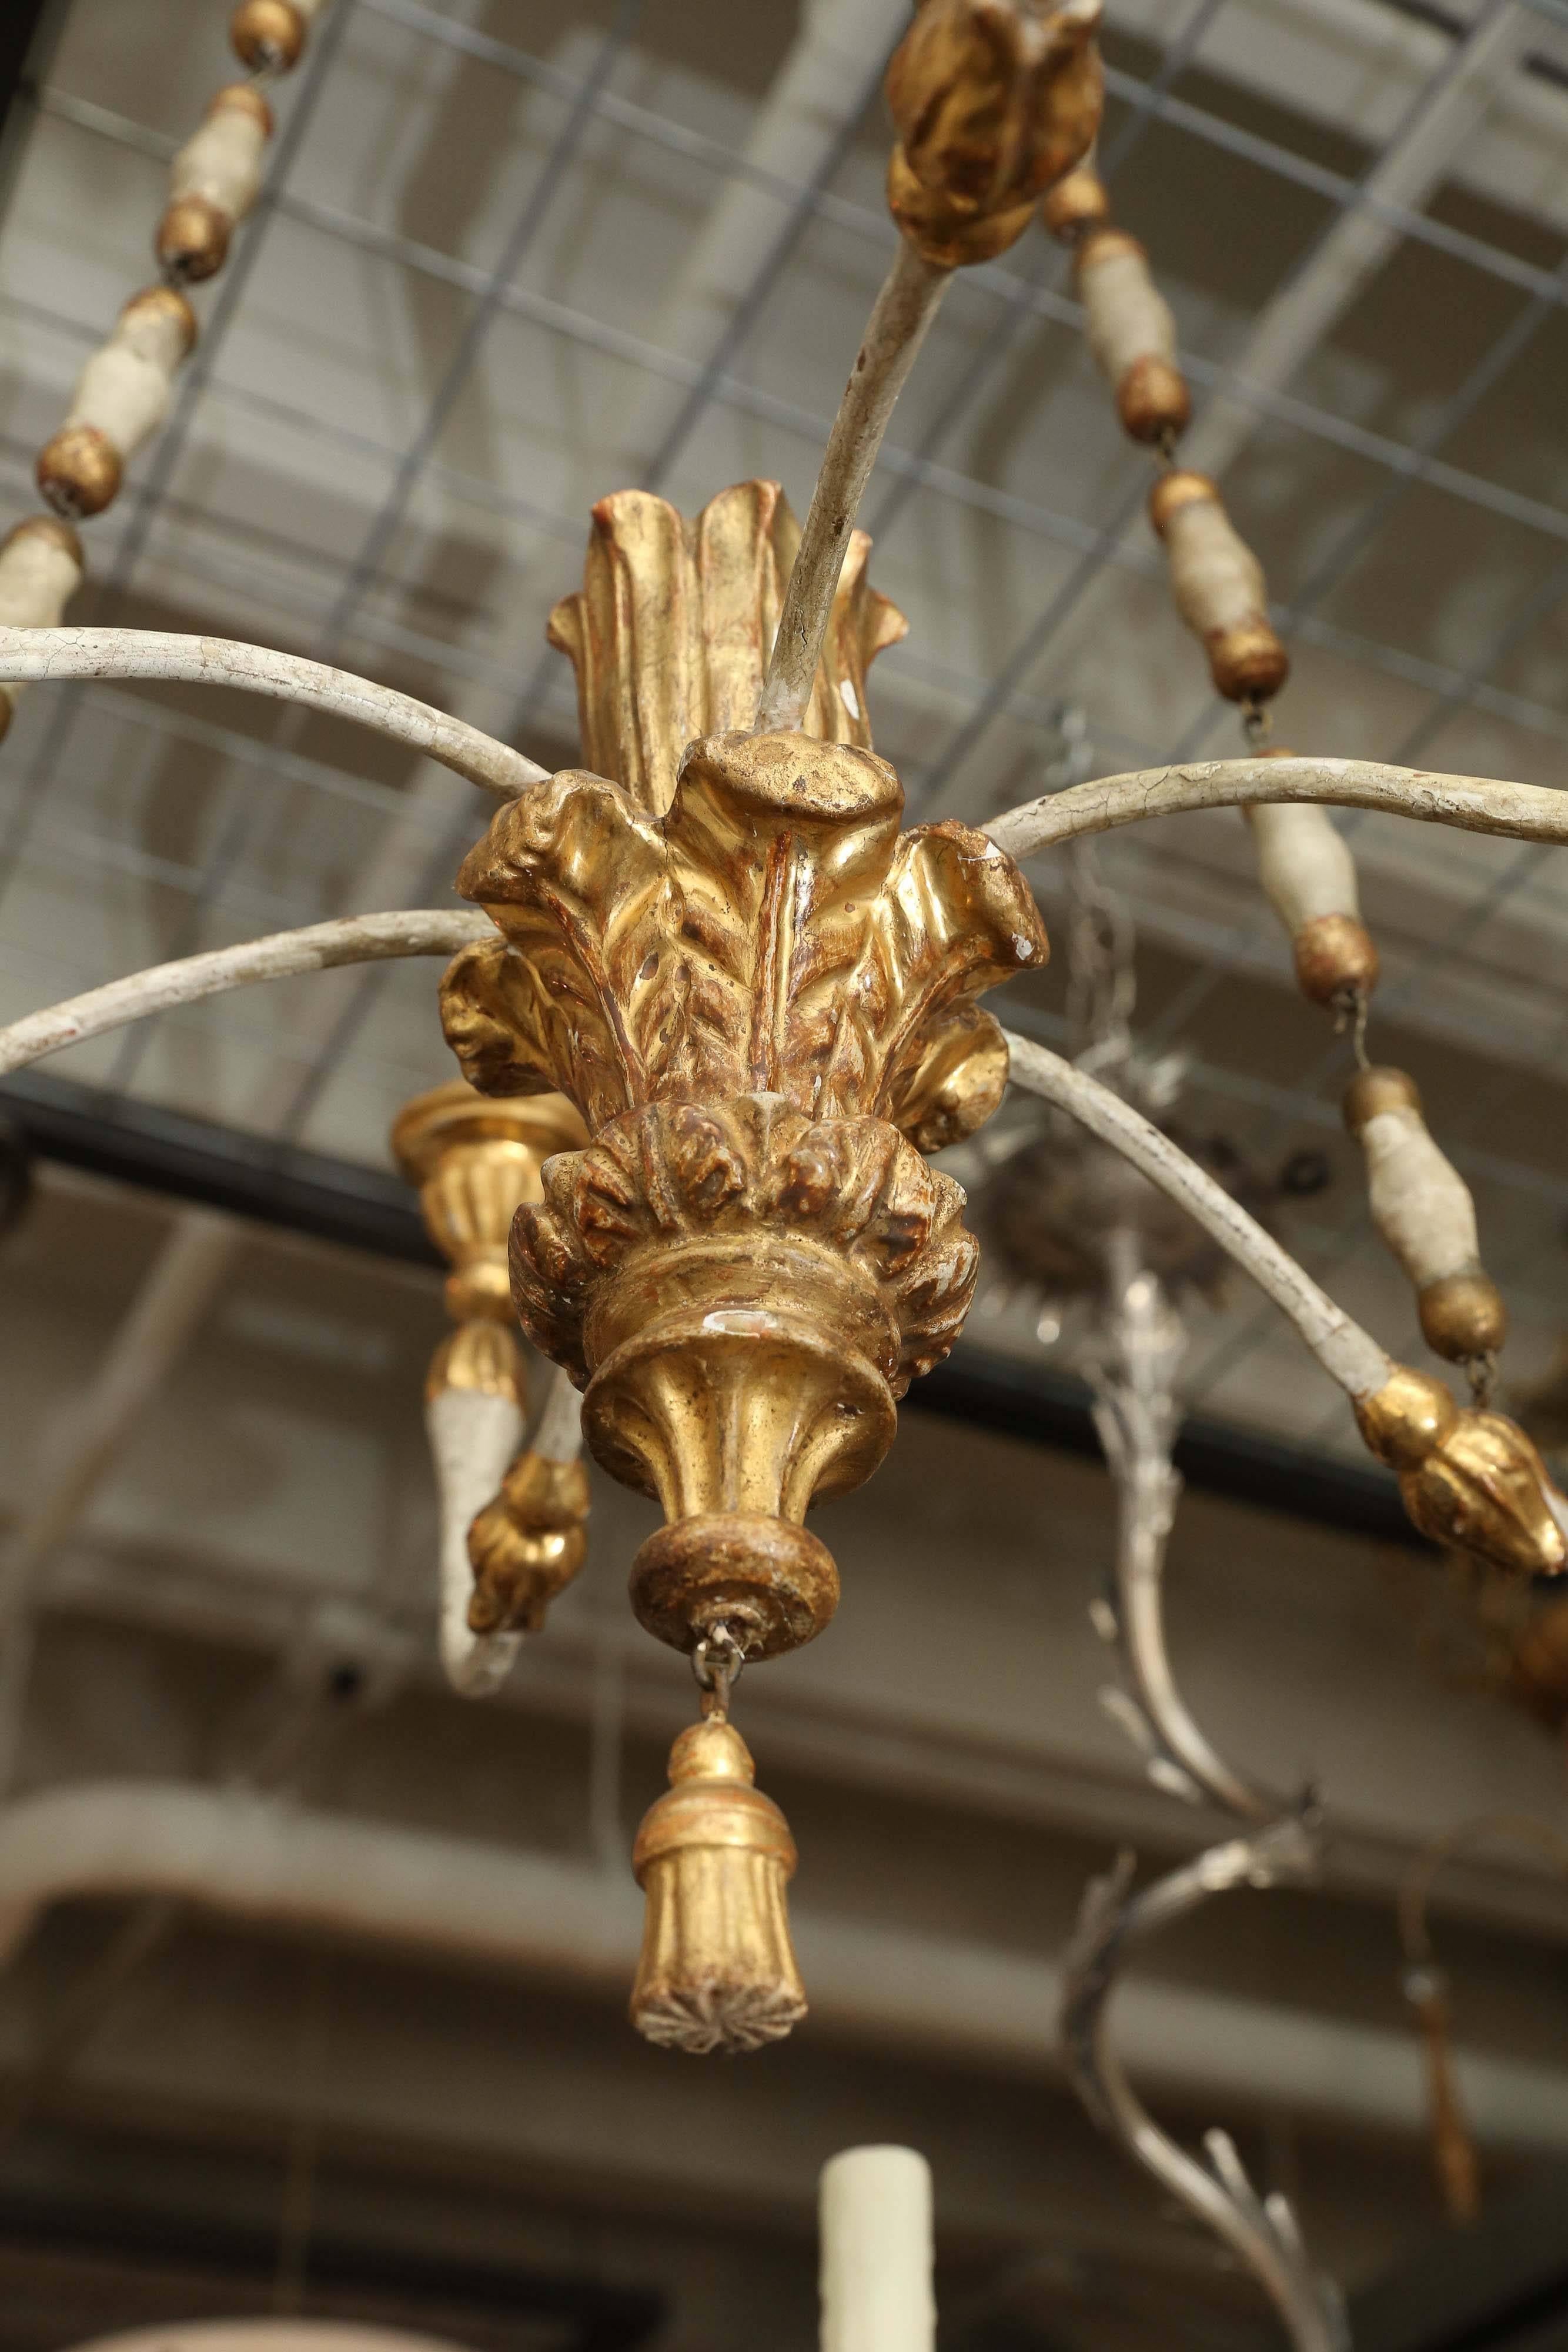 lustre vénitien peint et doré du 18e siècle provenant de la maison d'un marchand. Réalisé avec des détails et des proportions de fragments magnifiques. Prêt à être utilisé avec des bougies.